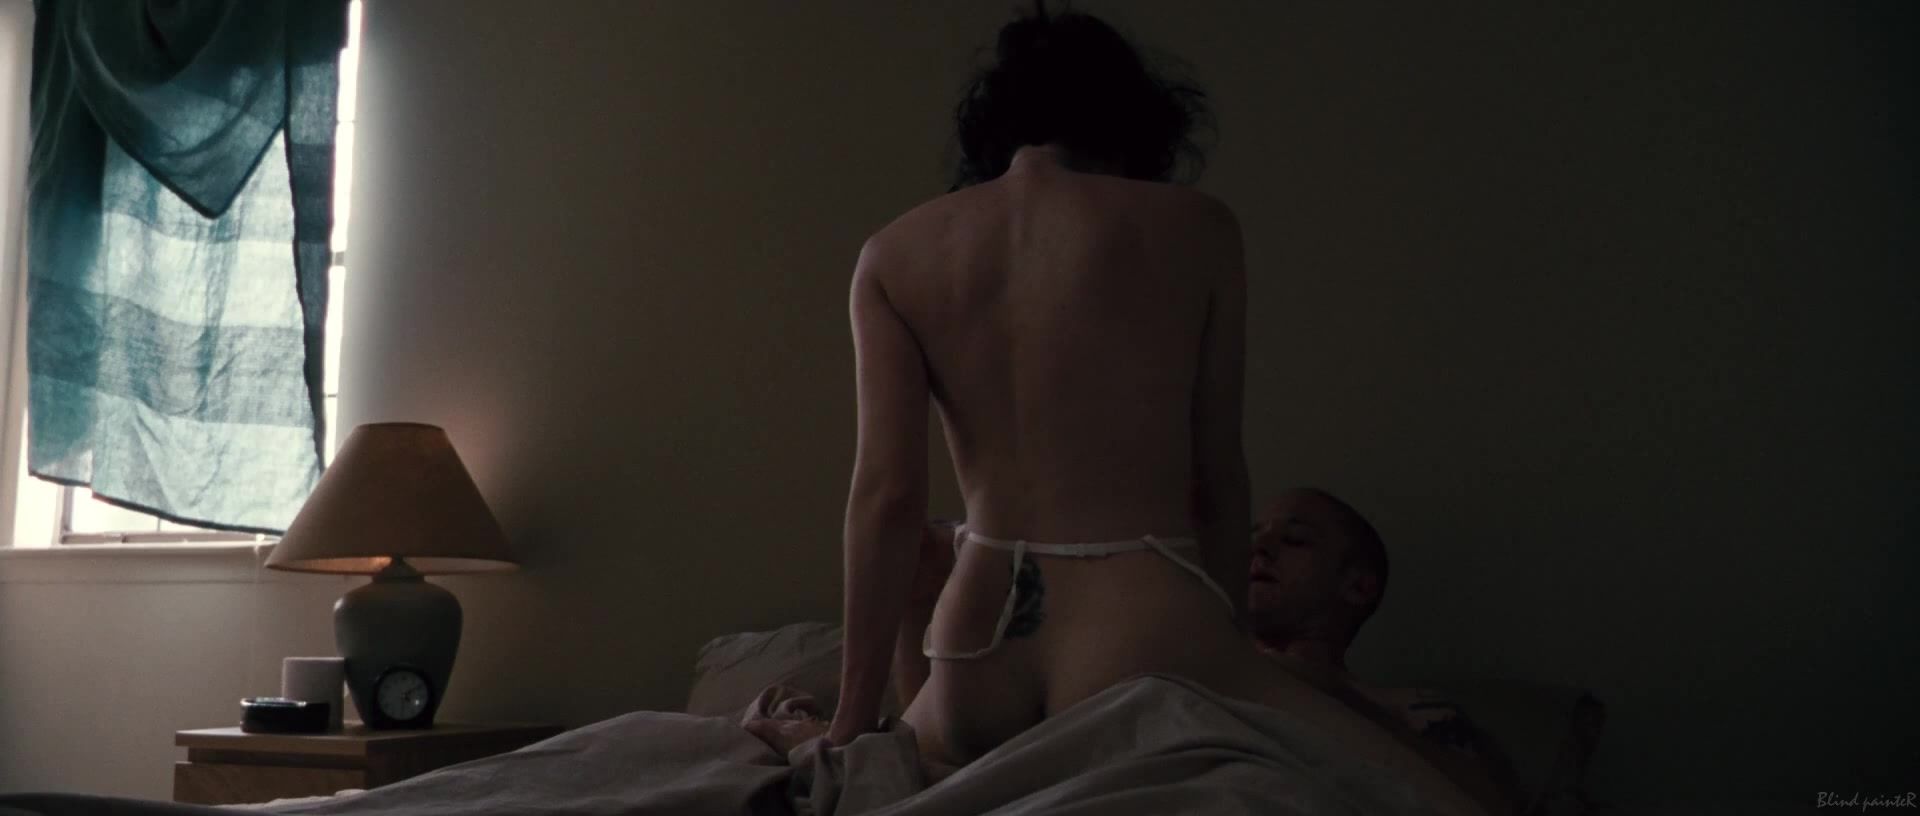 Nylon Sex video Jena Malone, Lisa Joyce nude - The Messenger (2009) Panocha - 1